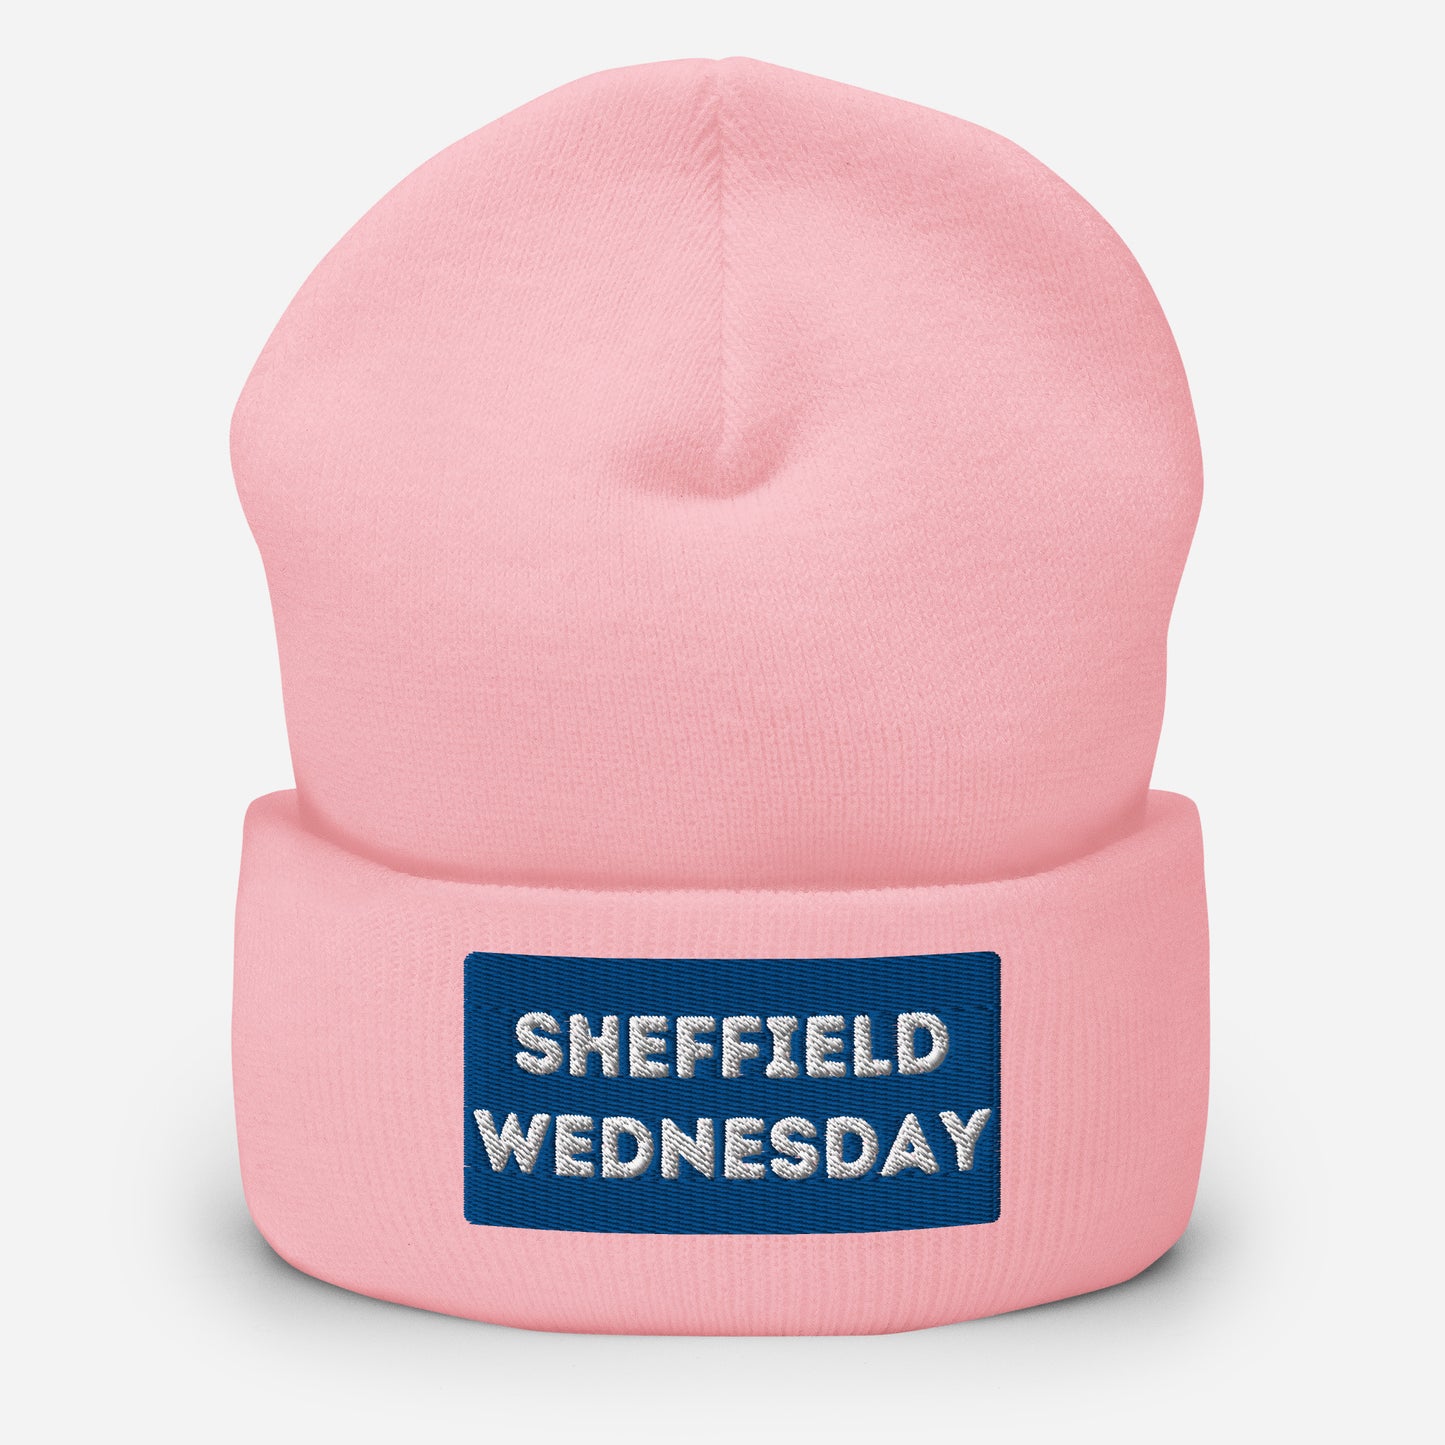 Sheff Wednesday Cuffed Beanie Hat